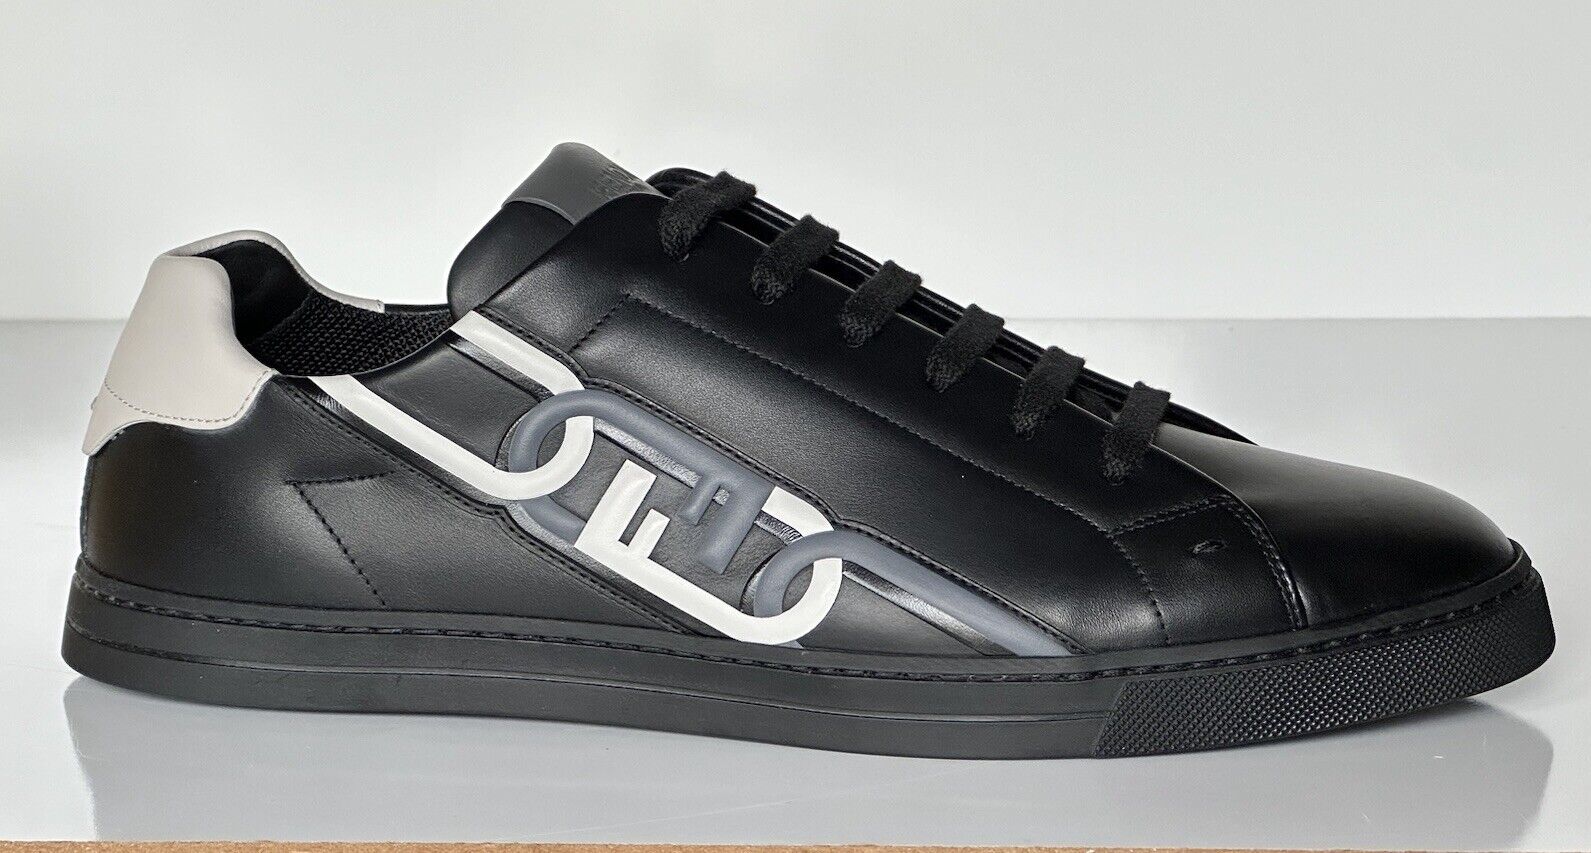 NIB $795 Fendi O’lock Leather Black Sneakers 11 US (44 Euro) 7E1562 Italy